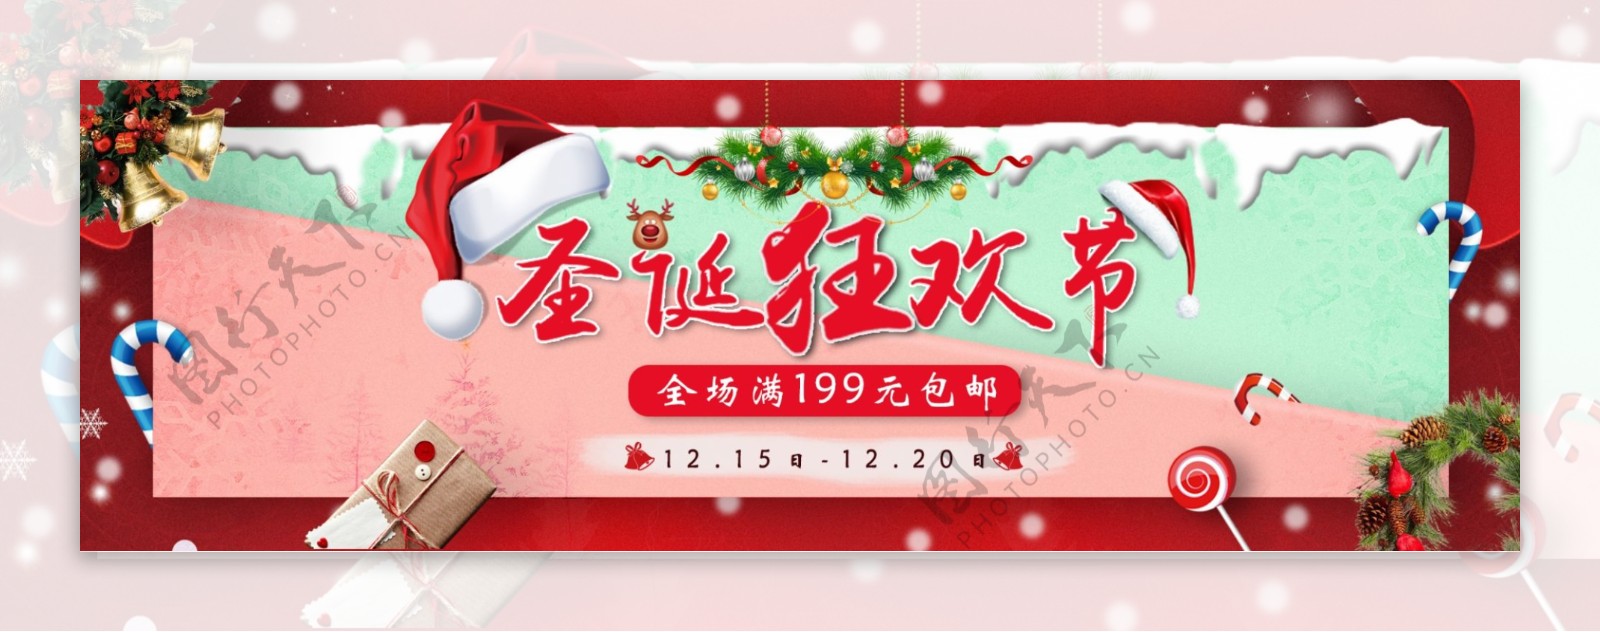 红色圣诞节节日淘宝海报